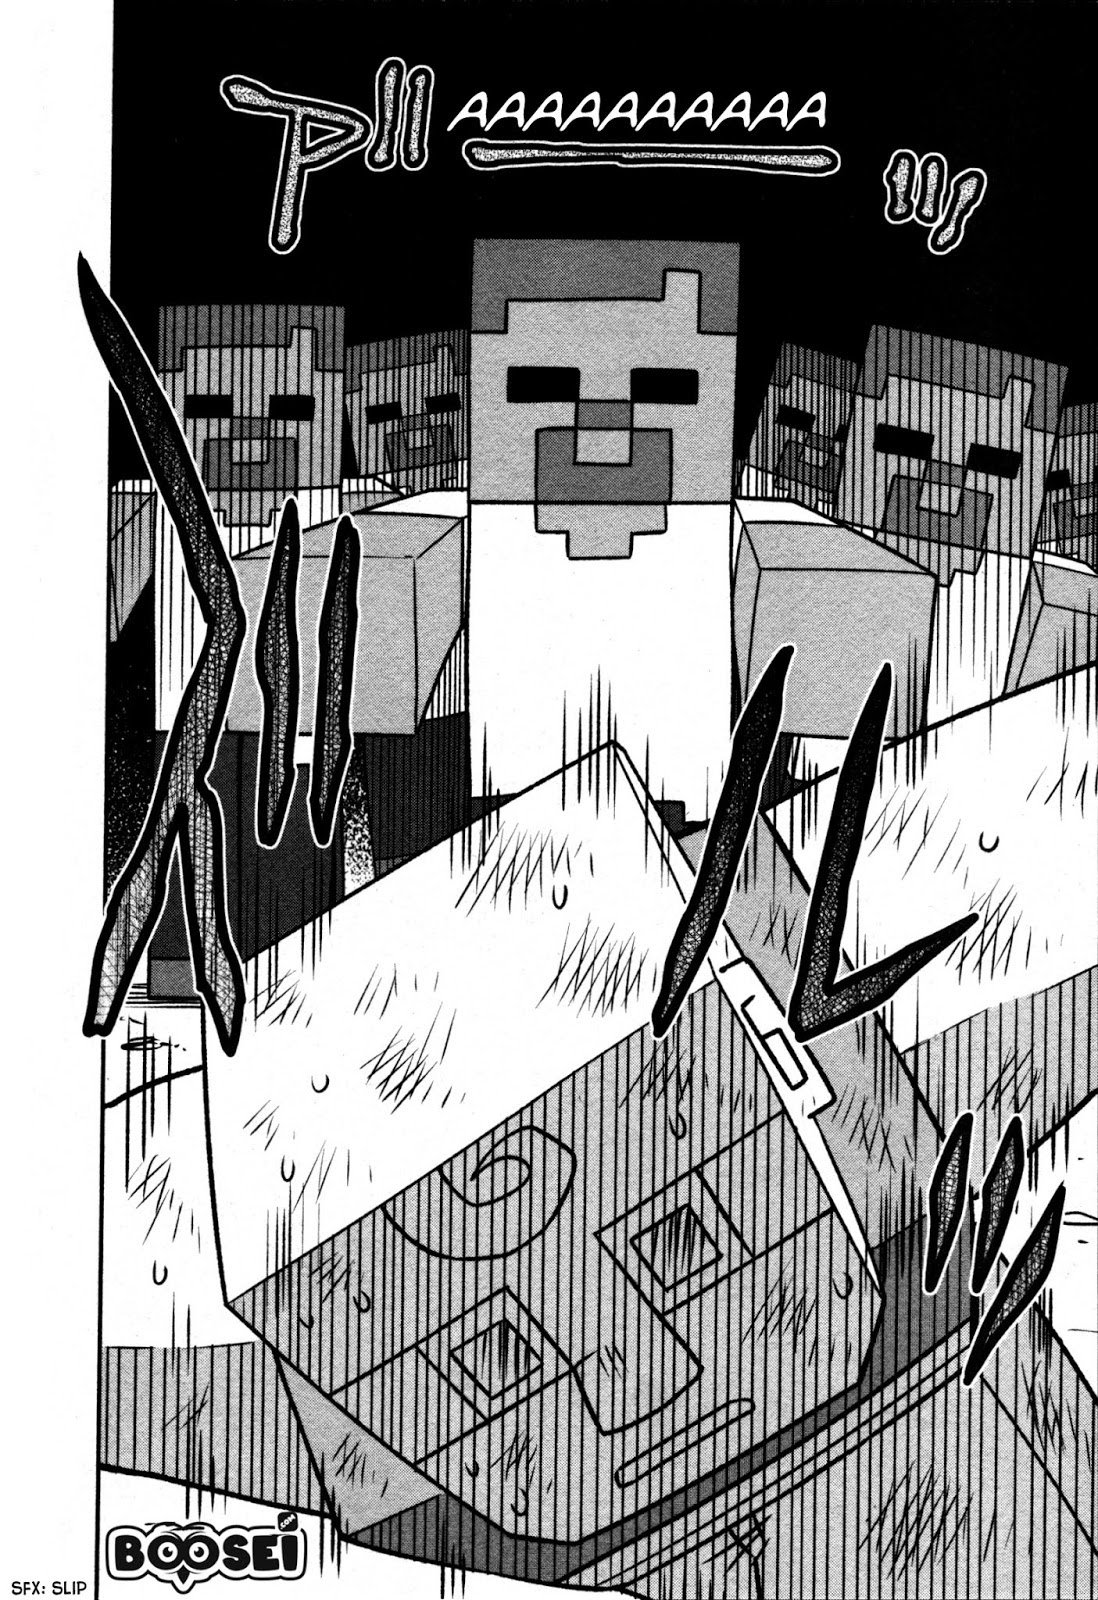 Baca Minecraft: Sekai no Hate no Tabi Chapter 1  - GudangKomik